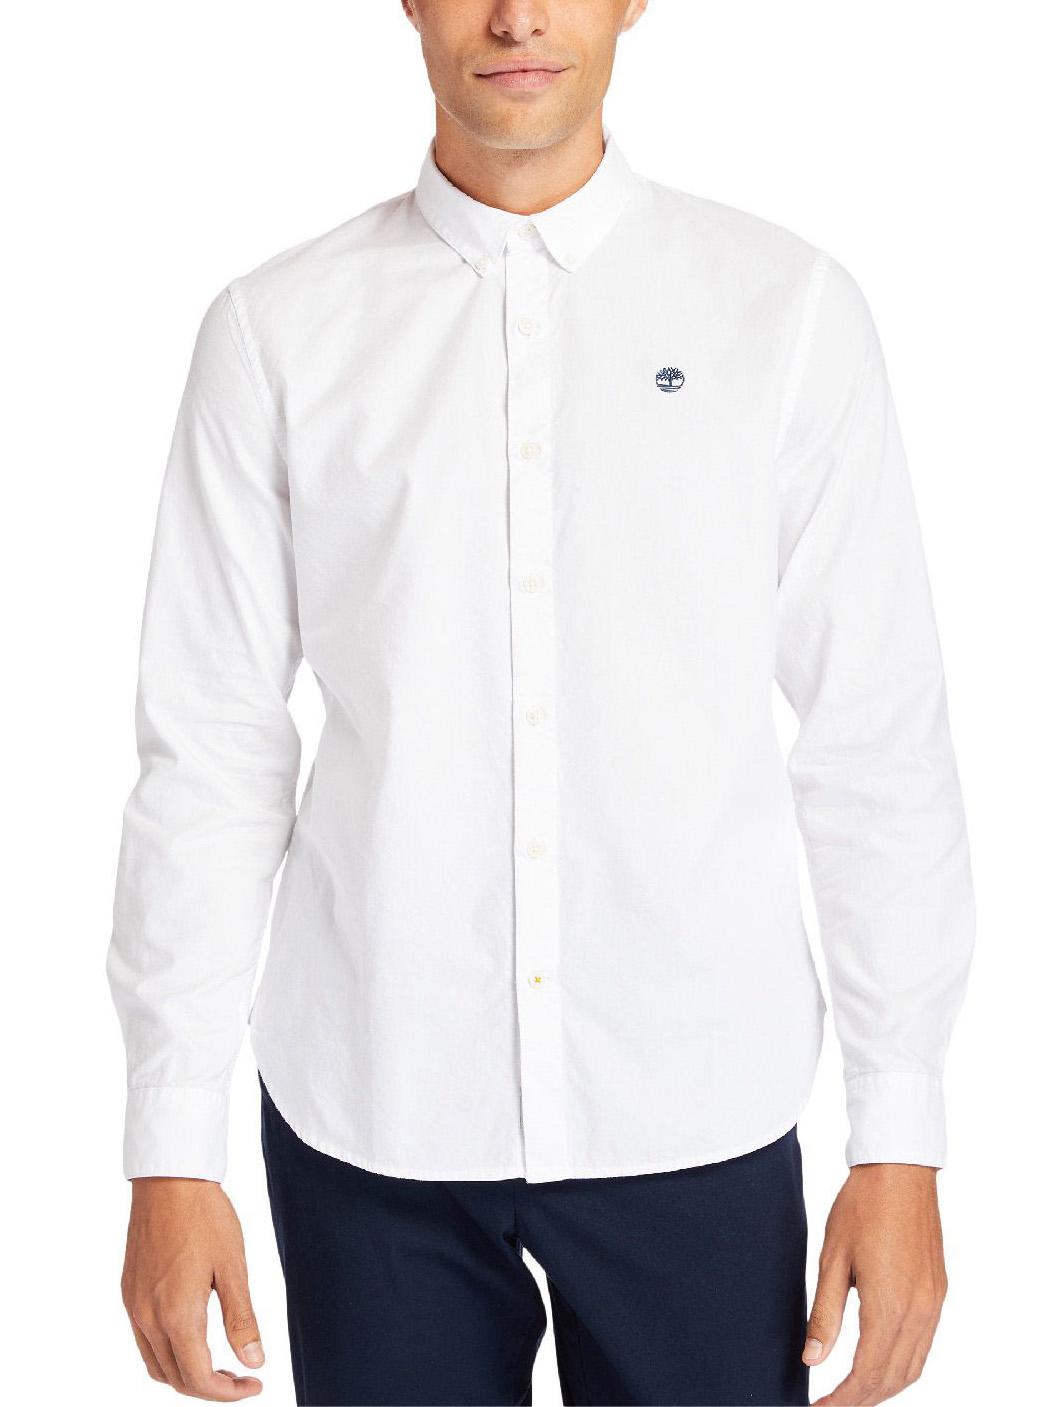 Correspondiente a tipo Formular Timberland Elvatd Oxford Camisa Slim Fit Patio Blanco - ¡Compra En Le Sac  Outlet!